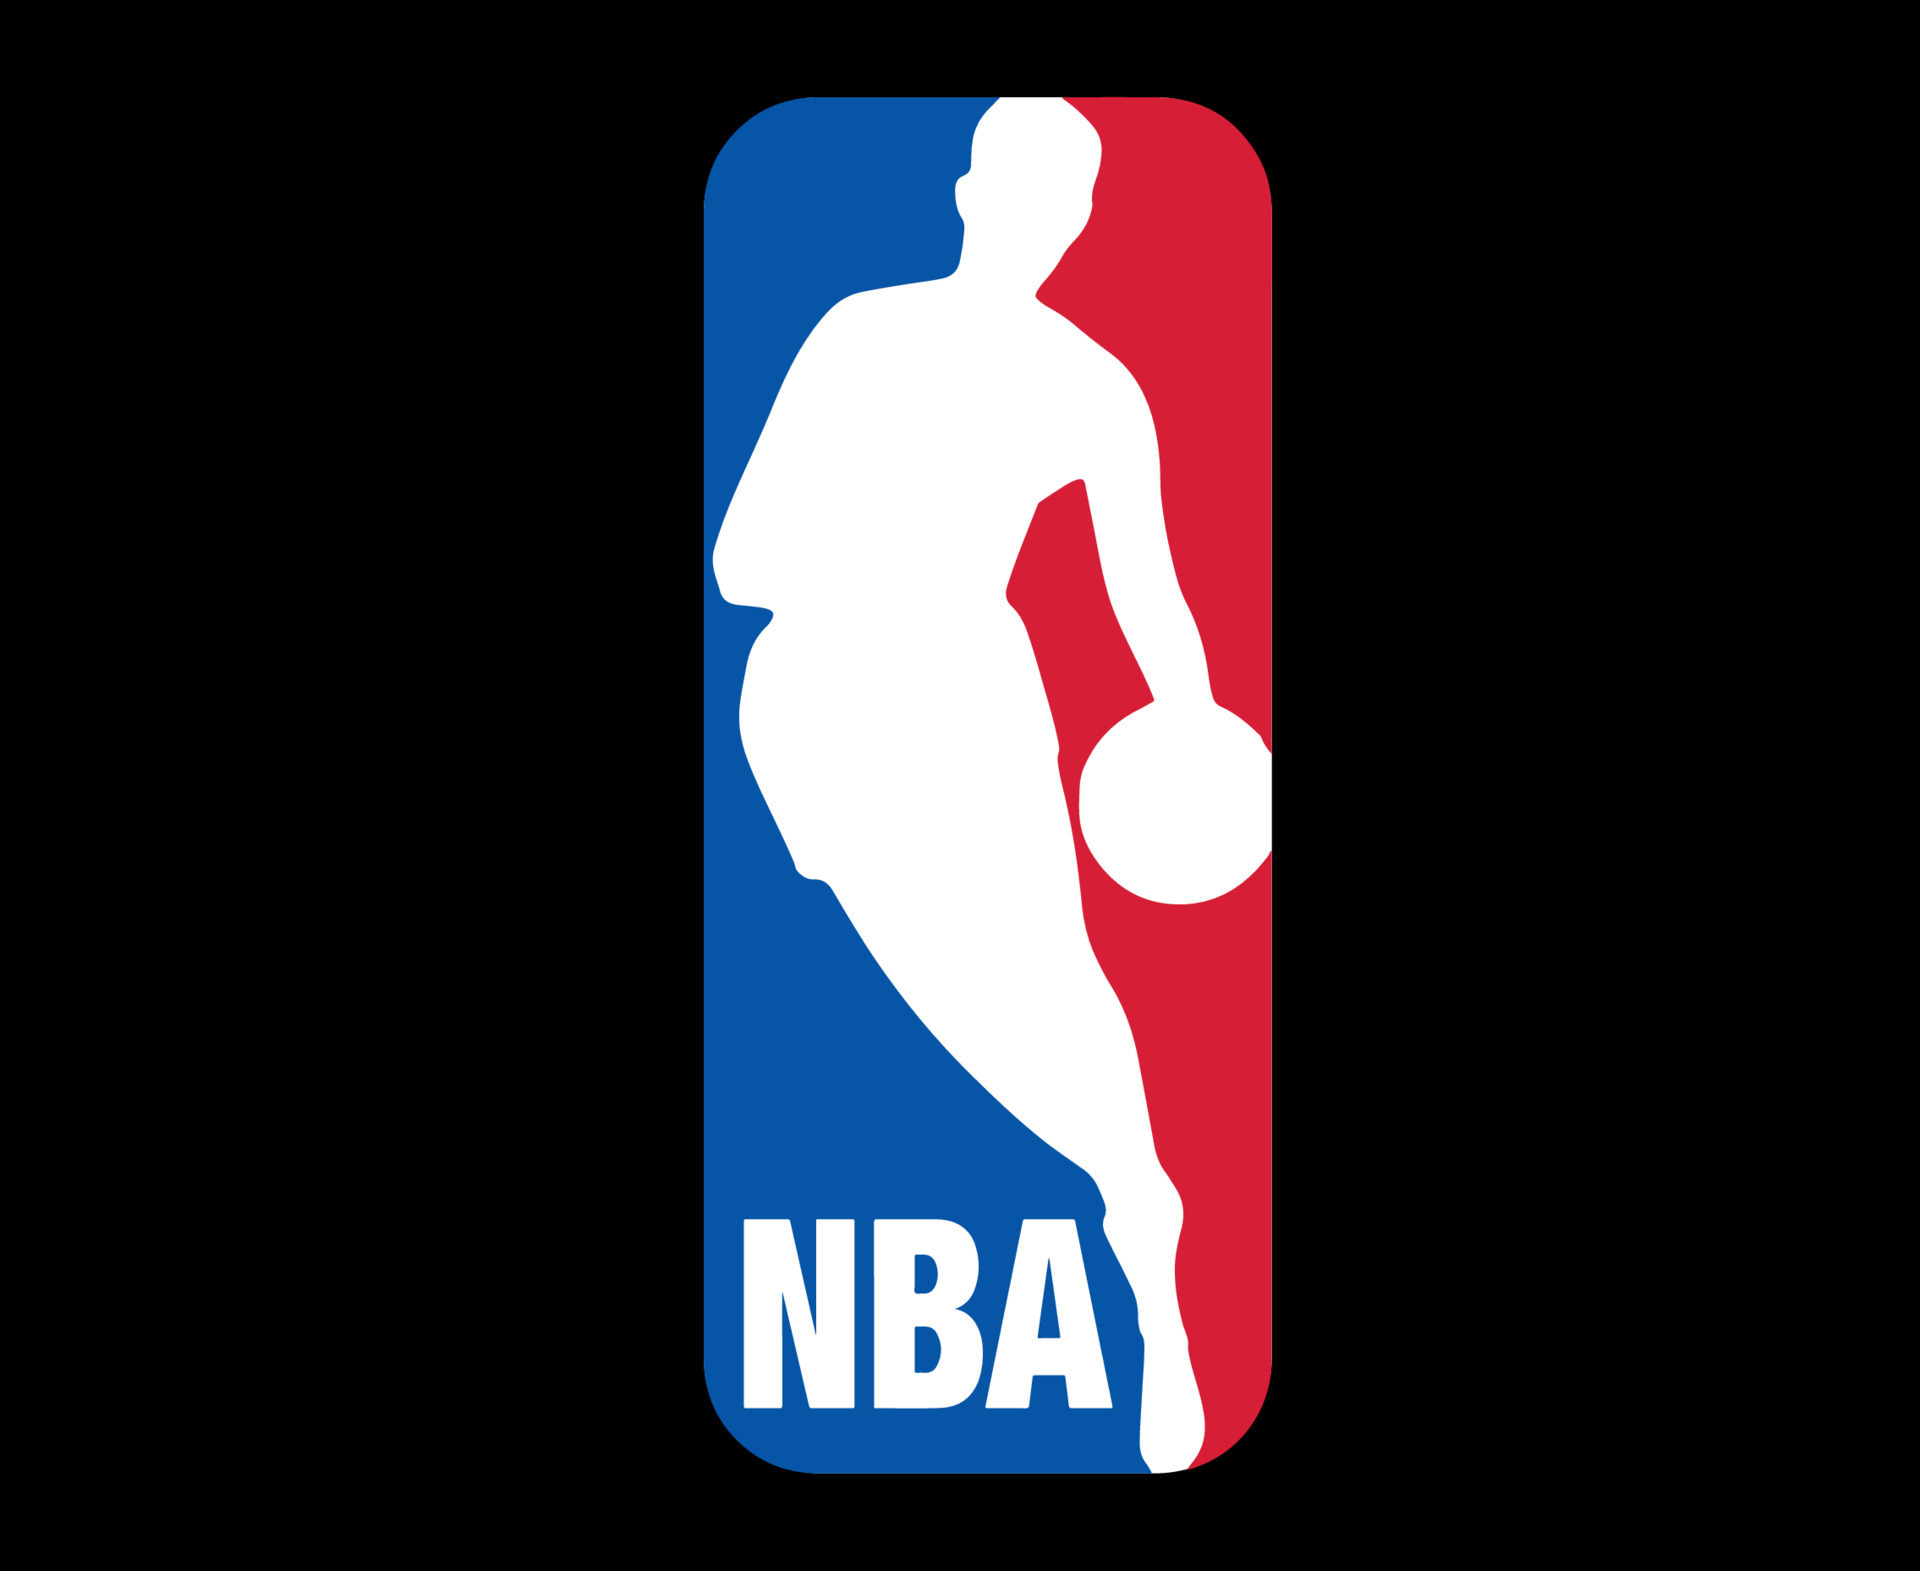 Hình nền Nba logo black background với cảm hứng bóng rổ